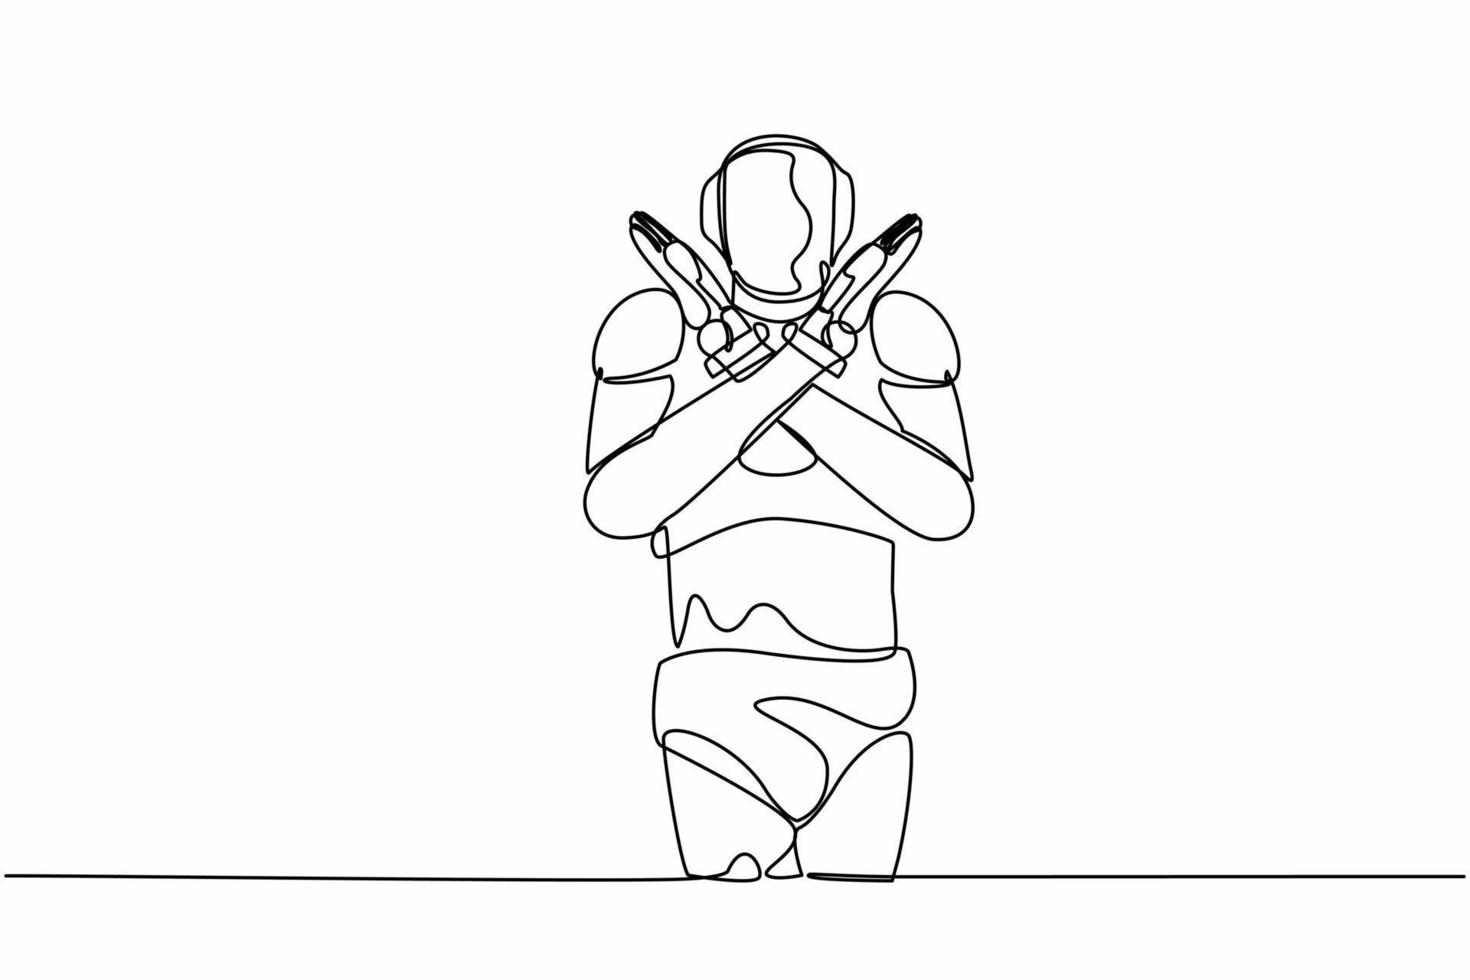 single een lijn tekening robot staand met kruispunt armen en maken X vorm geven aan, hou op teken met handen. technologie ontwikkeling. kunstmatig intelligentie. doorlopend lijn ontwerp grafisch vector illustratie